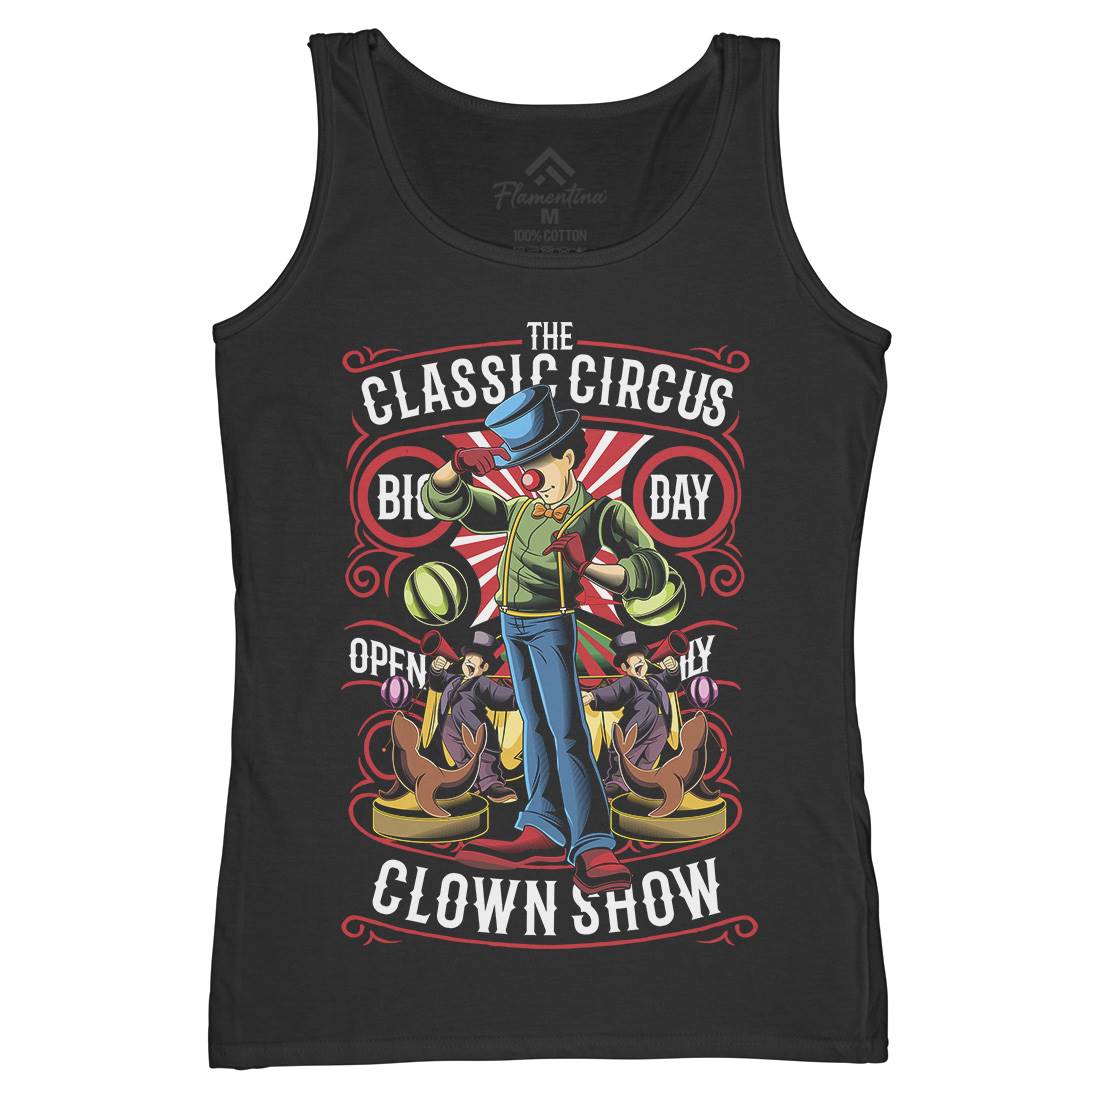 Classic Circus Womens Organic Tank Top Vest Retro C461